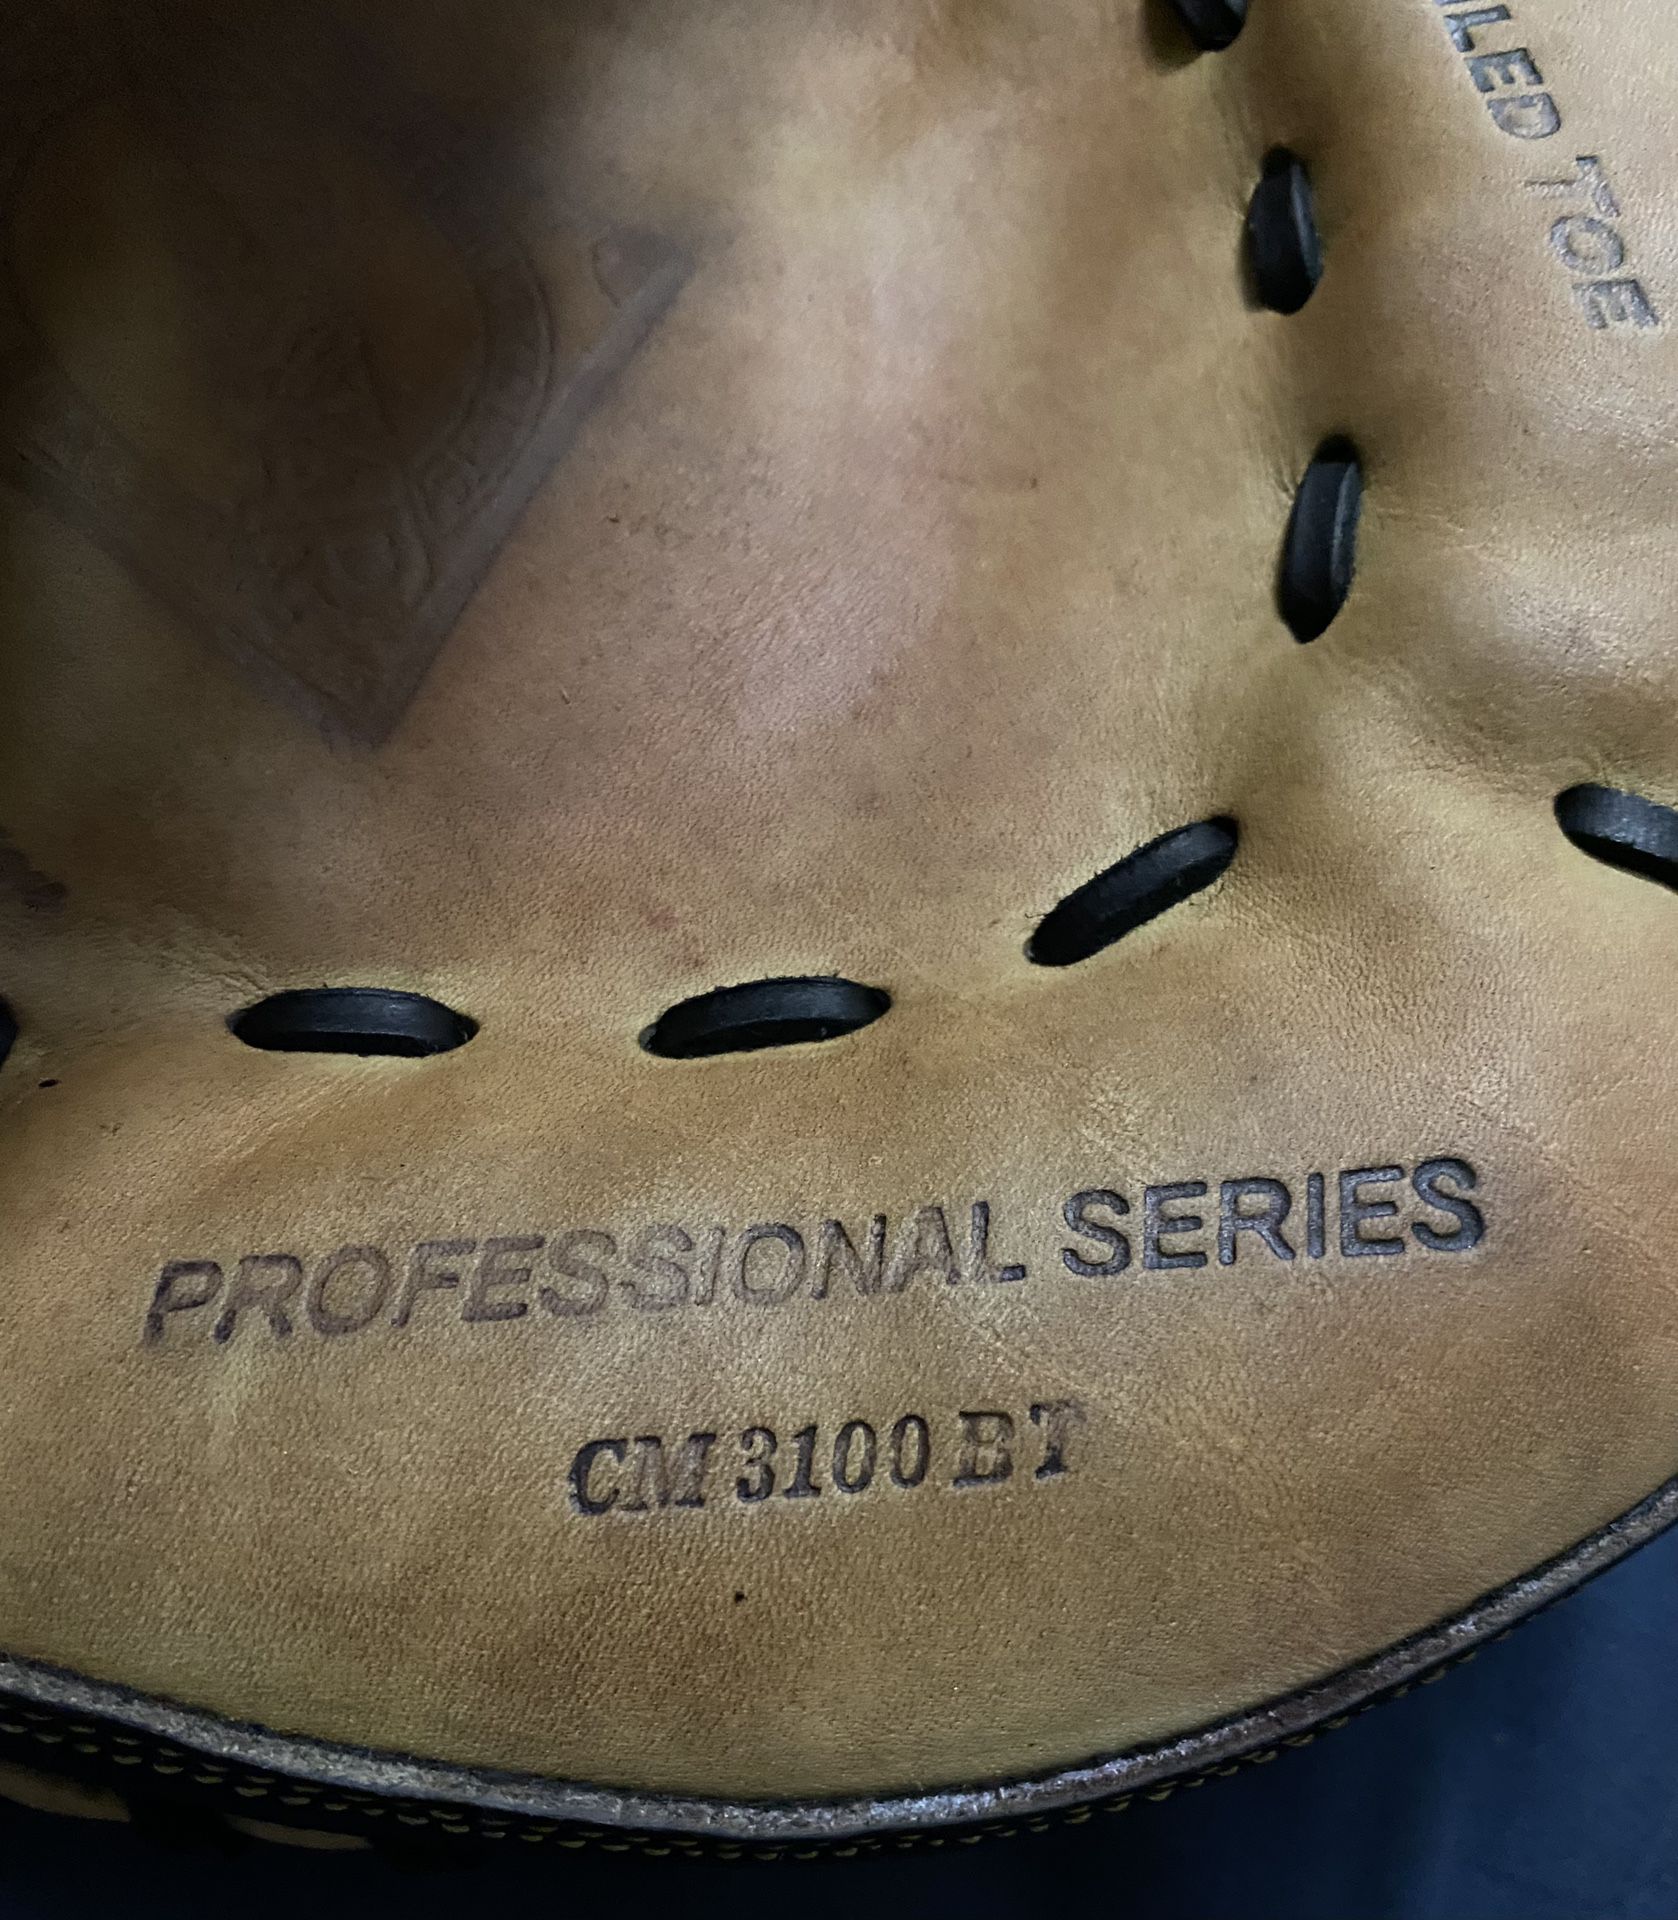 All-Star Professional Series Baseball Catcher’s Mitt